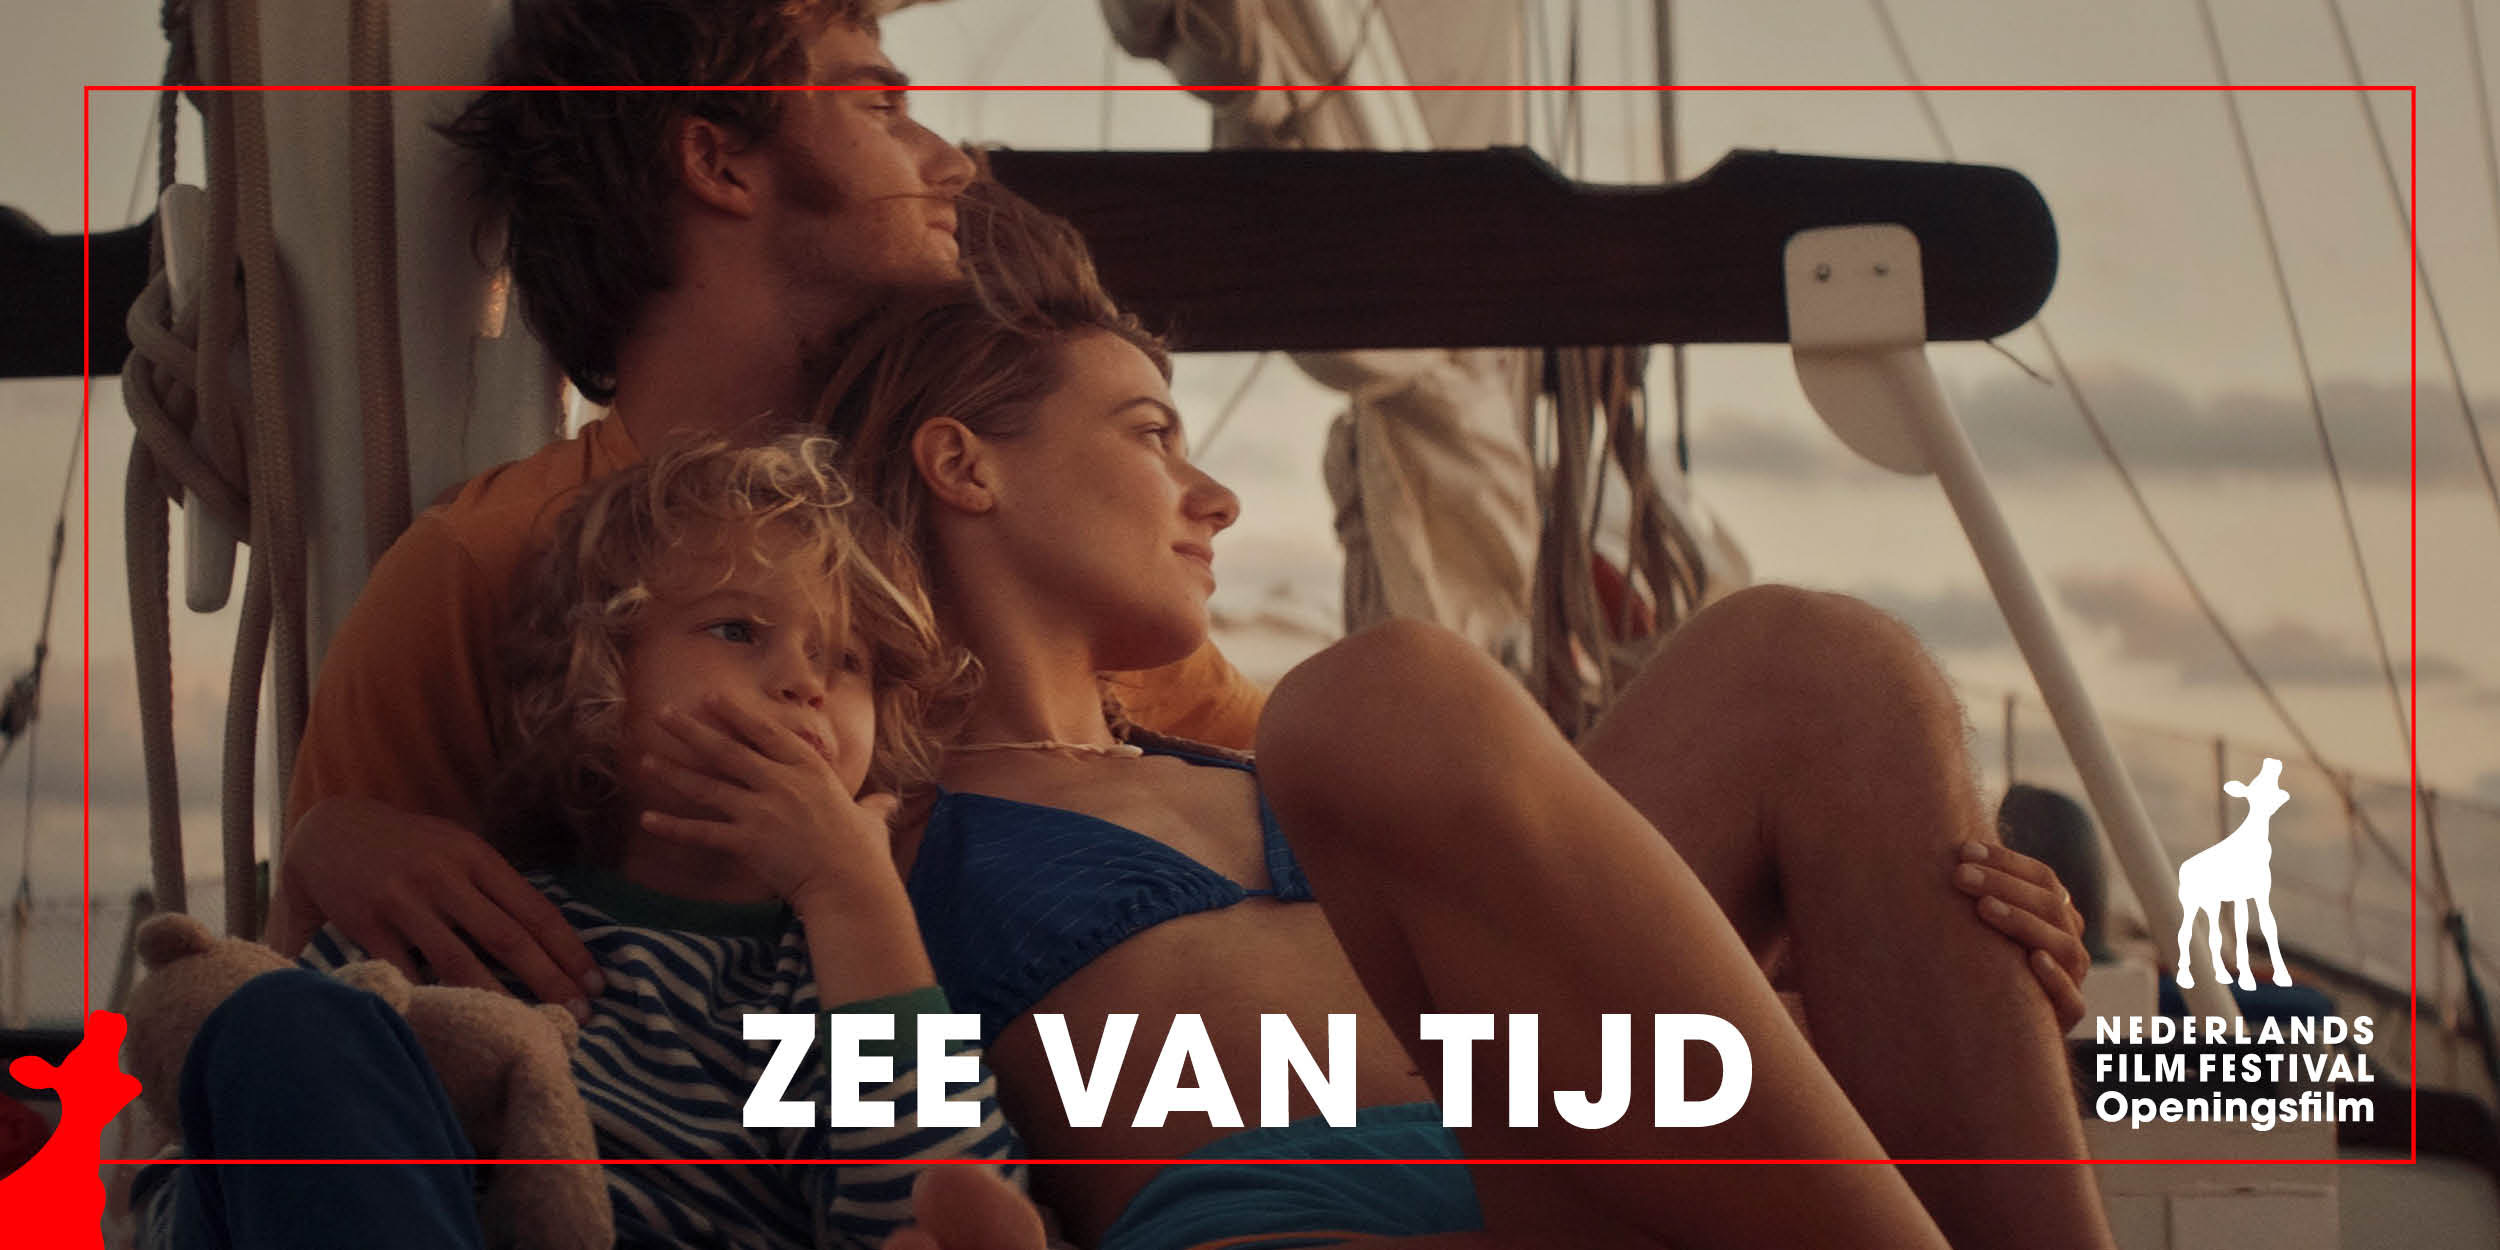 Nederlands Film Festival 2022 opent met Zee van tijd 